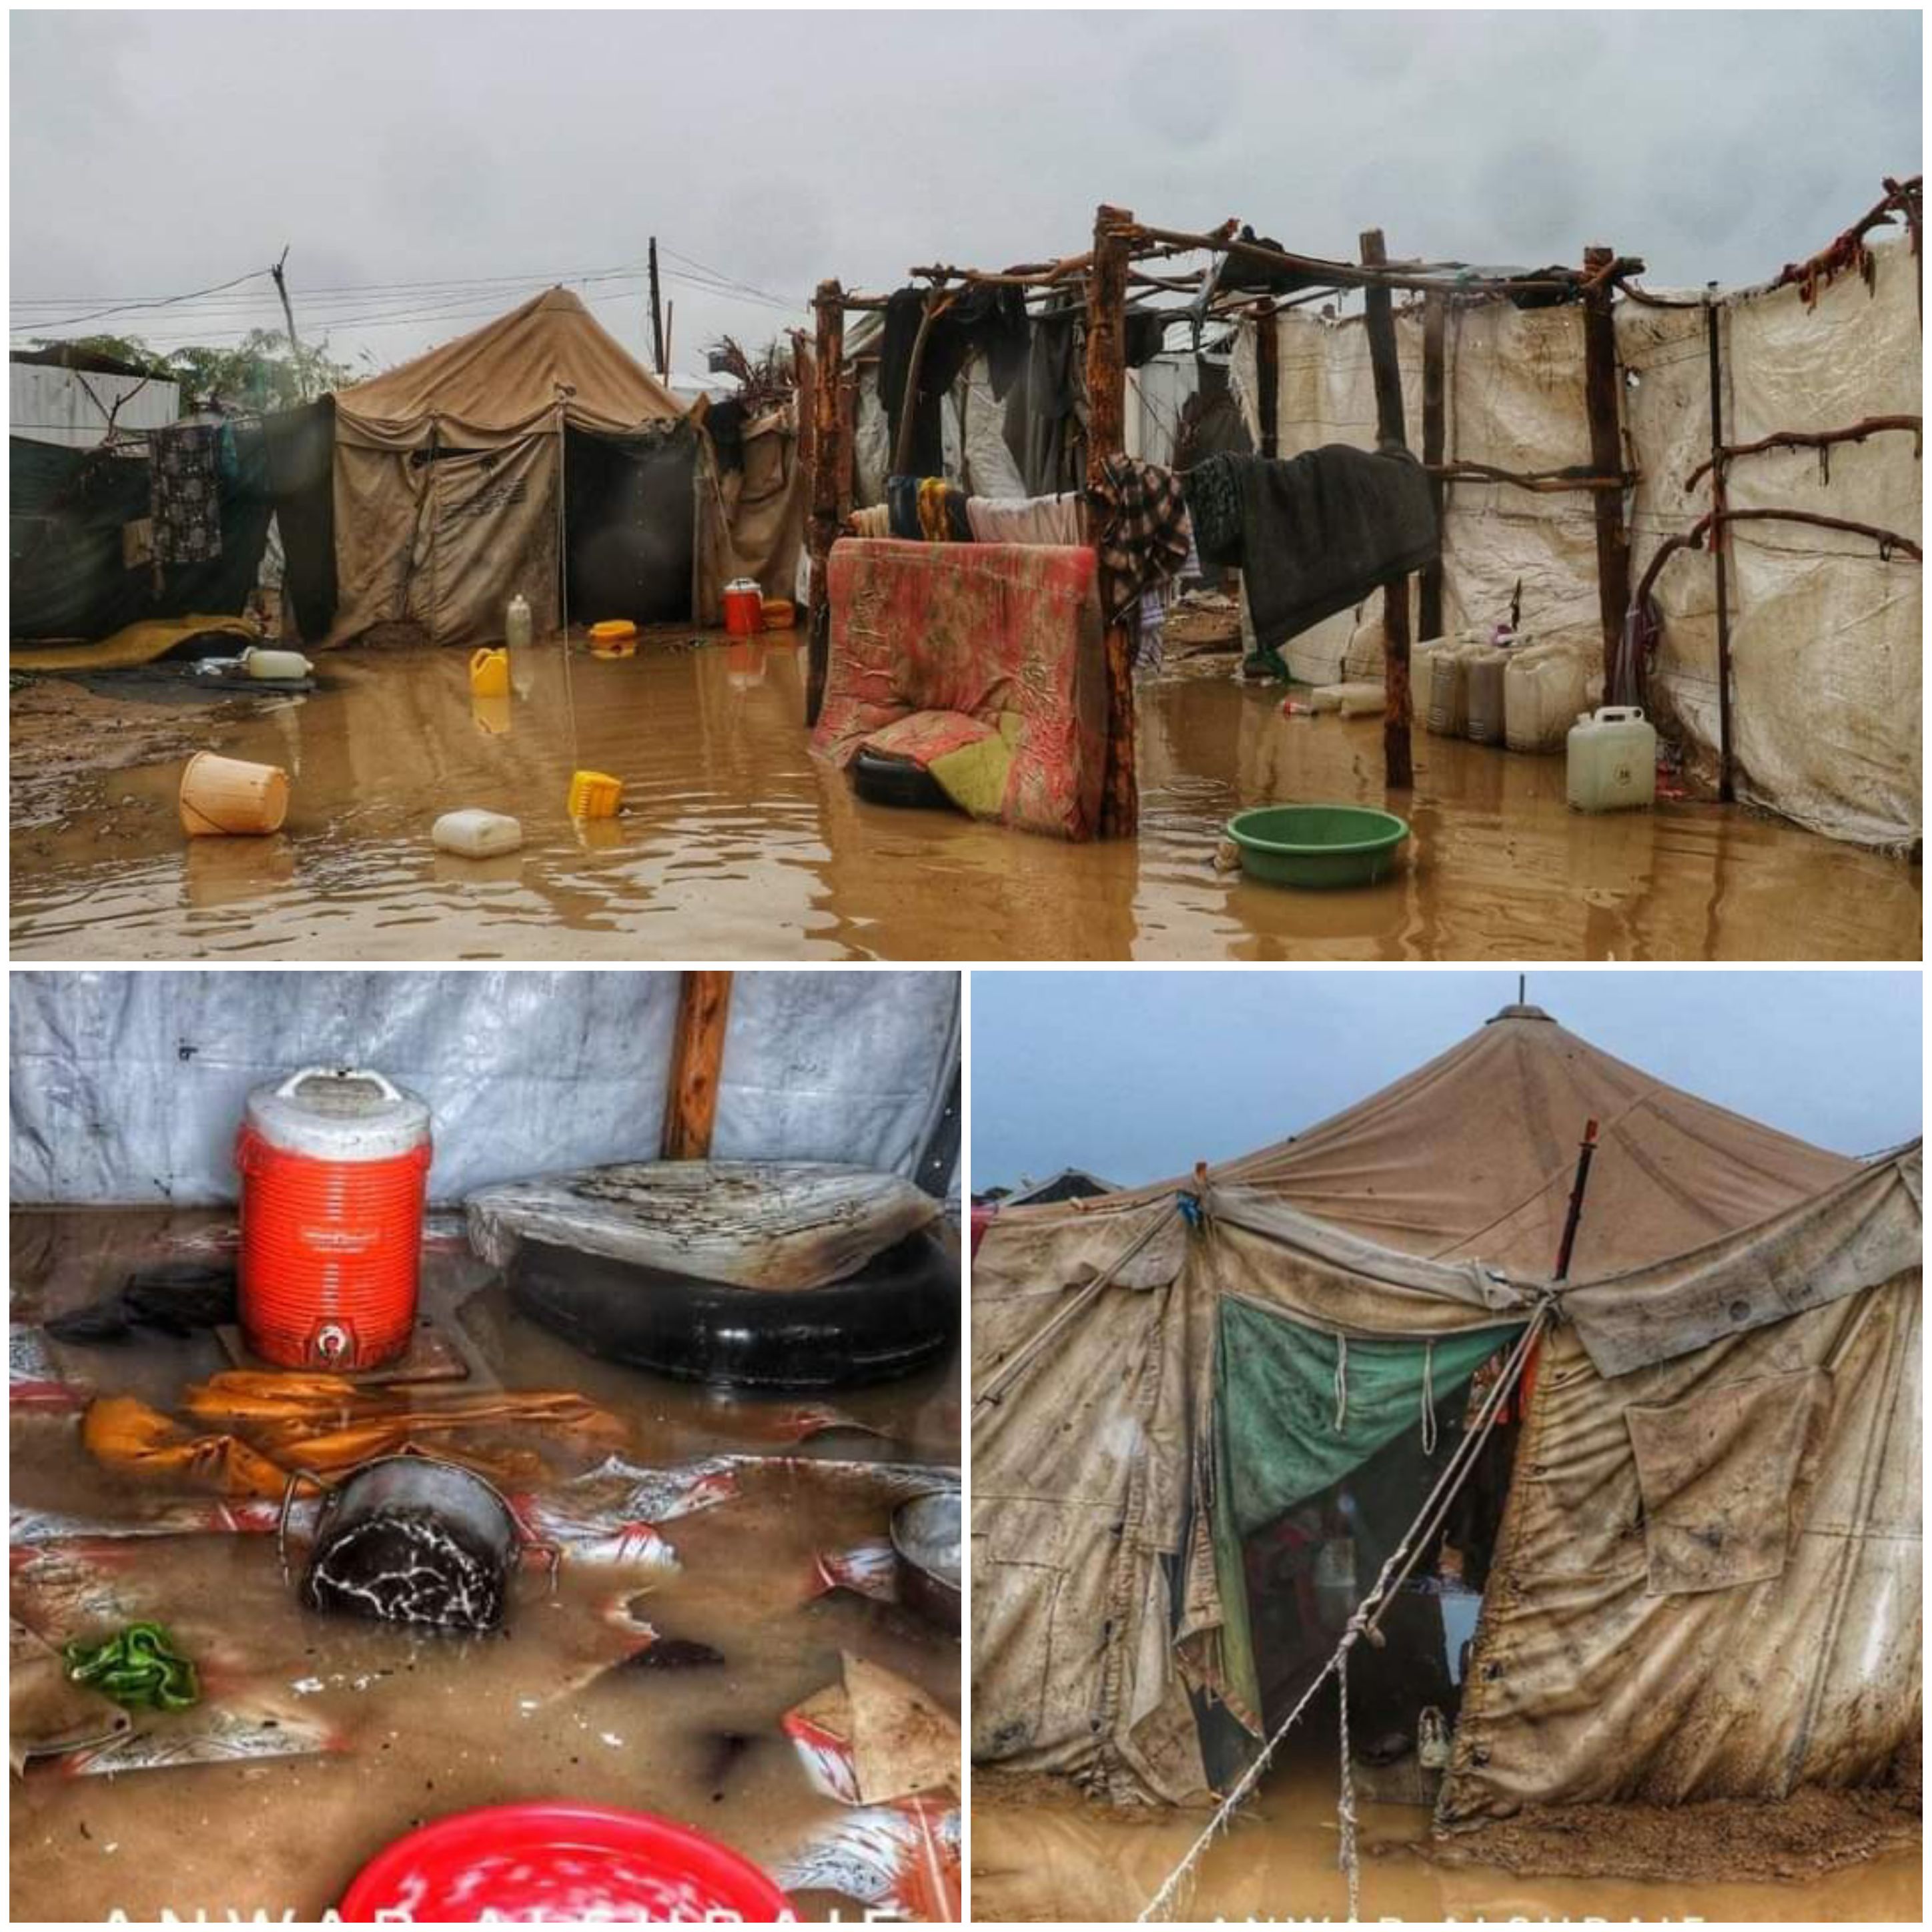 كارثة انسانية في مخيمات النازحين بالخوخة